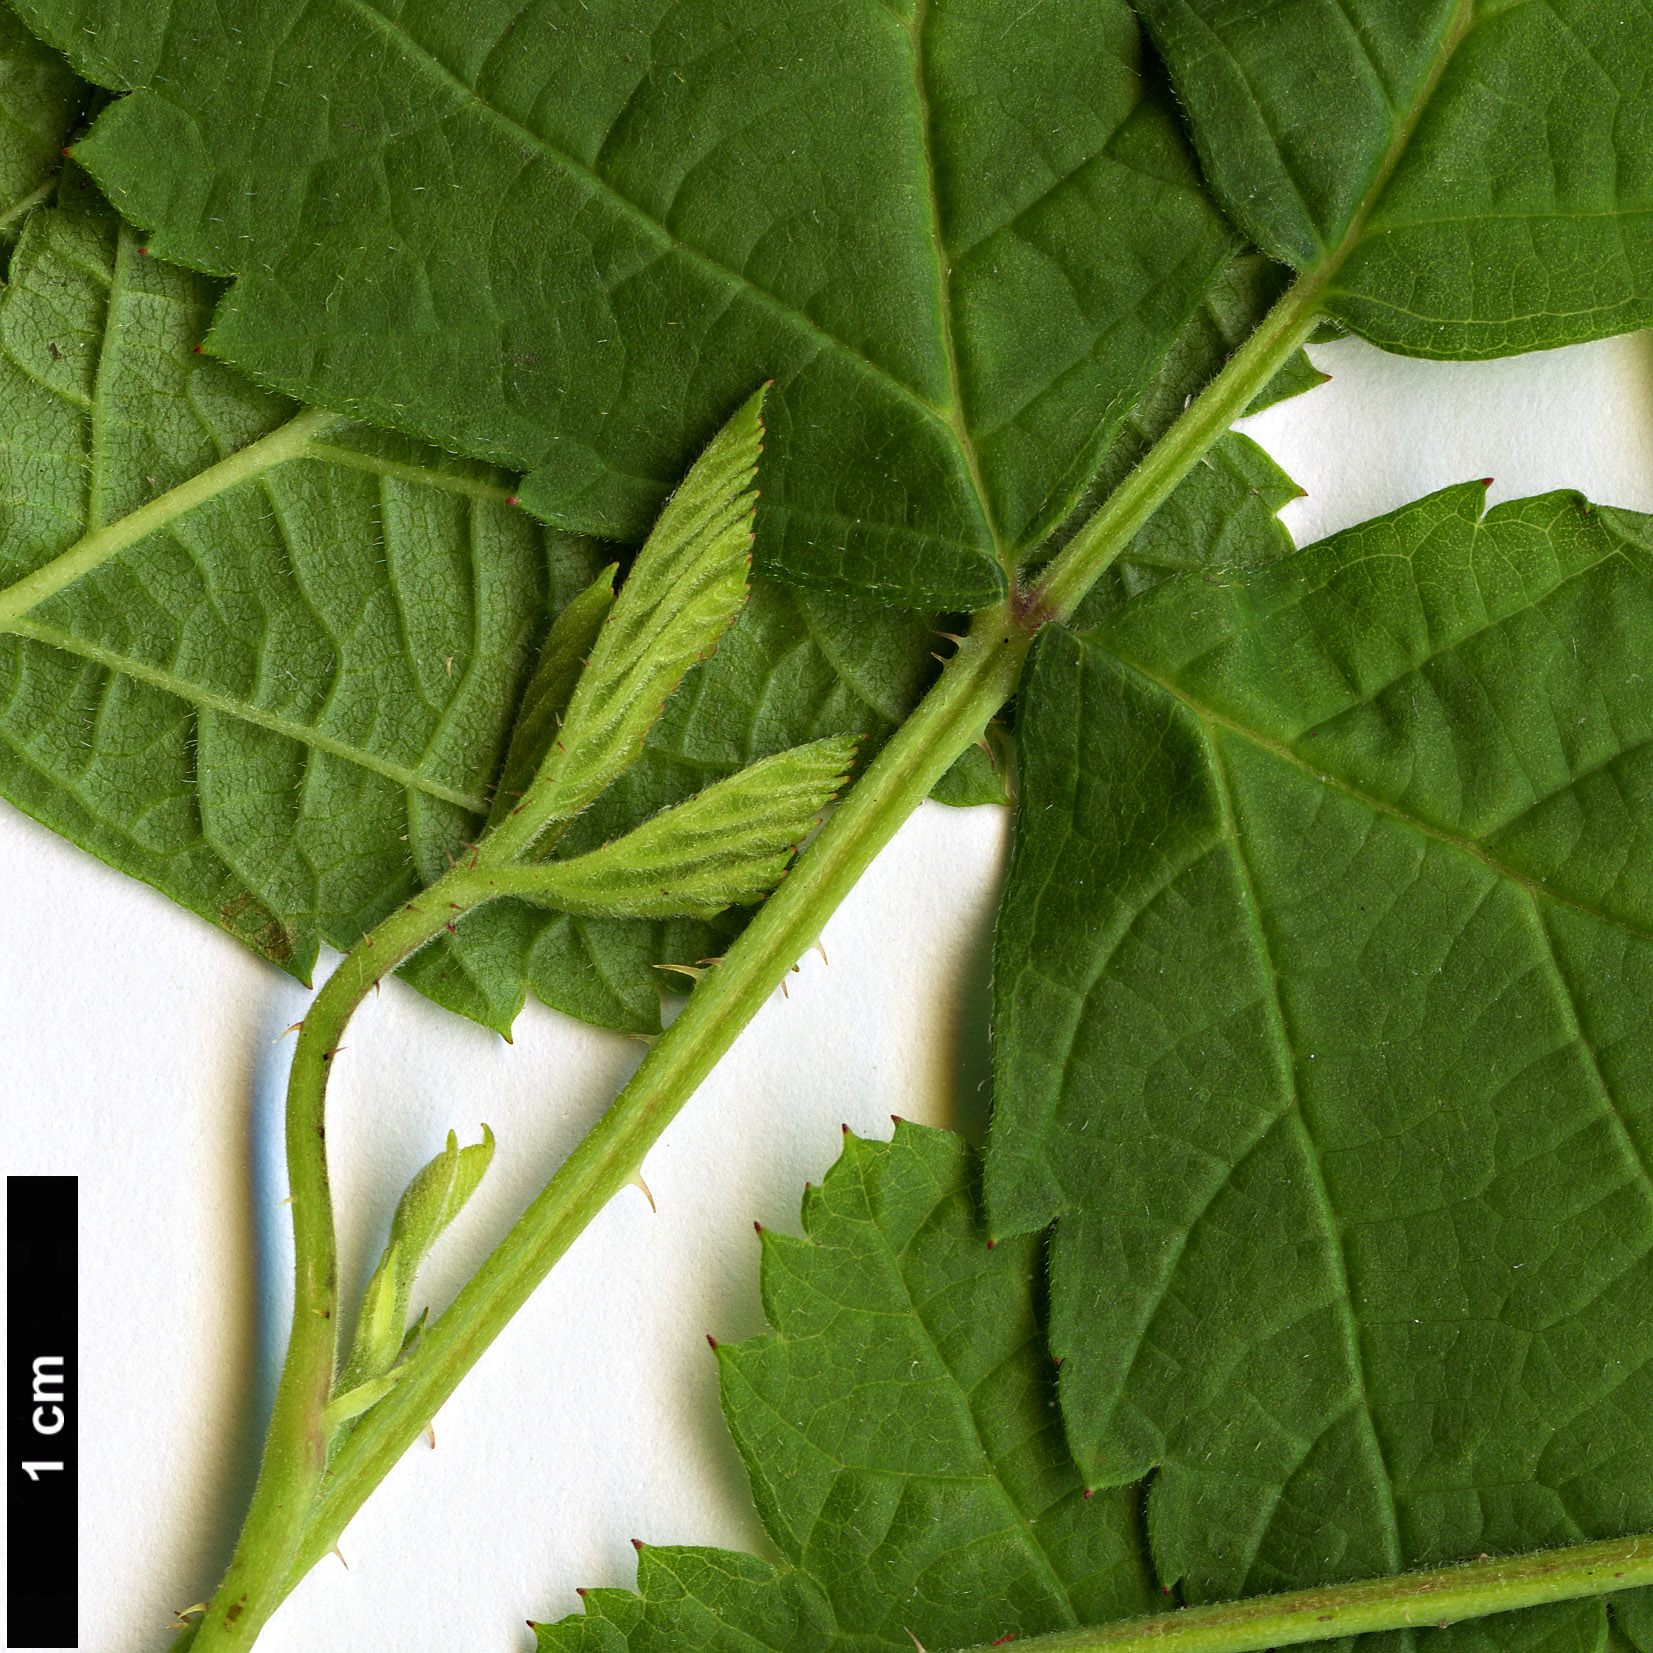 High resolution image: Family: Rosaceae - Genus: Rubus - Taxon: caesius